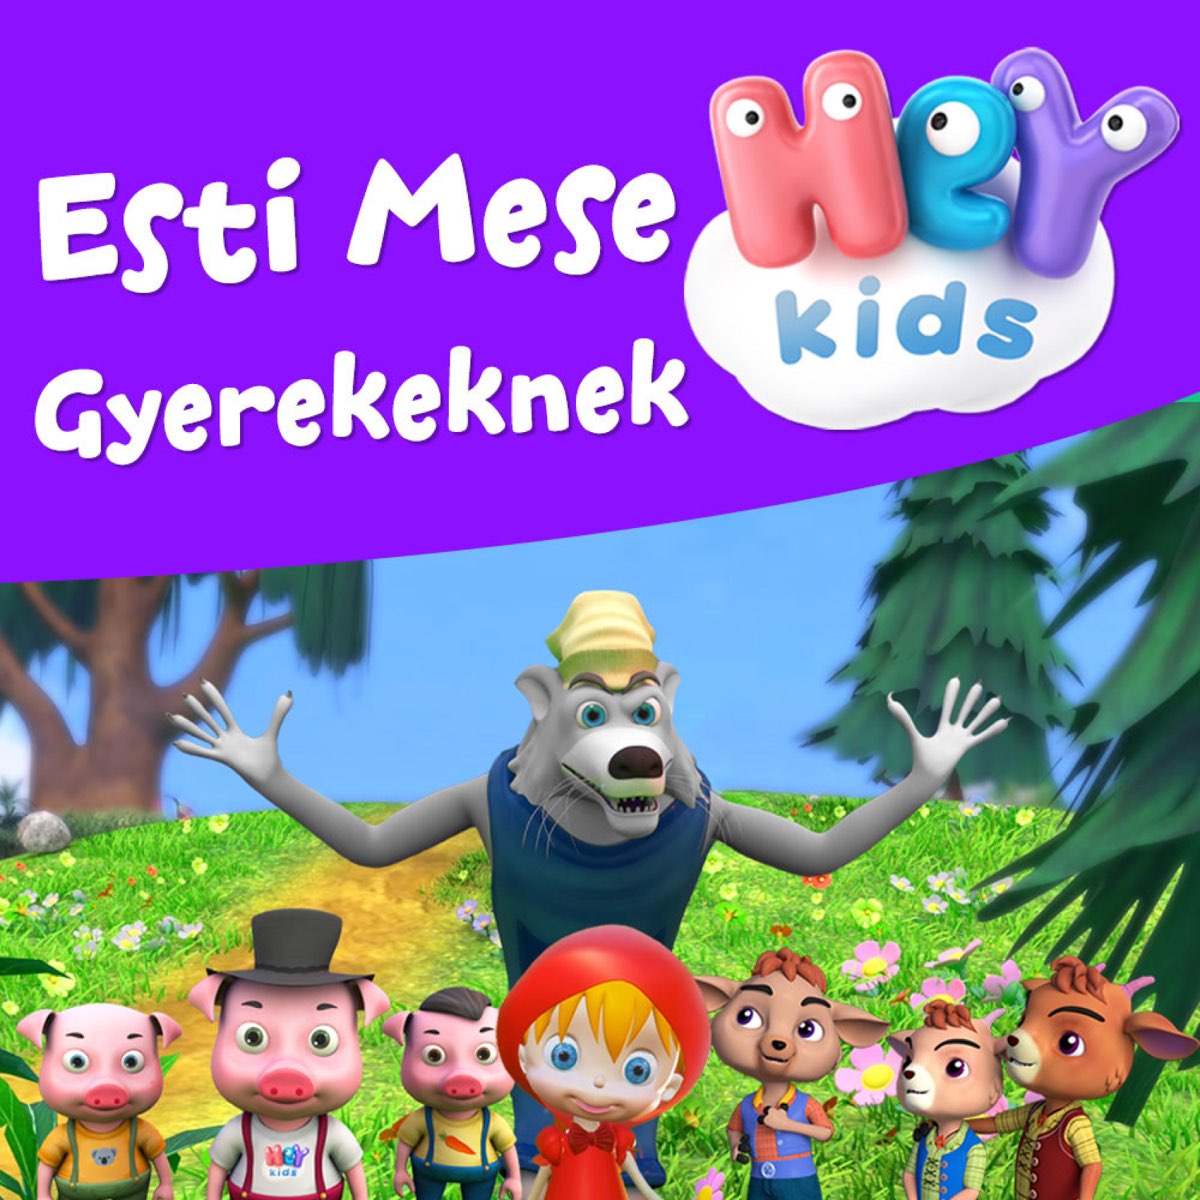 Esti Mese Gyerekeknek - EP by HeyKids Esti Mese on Apple Music